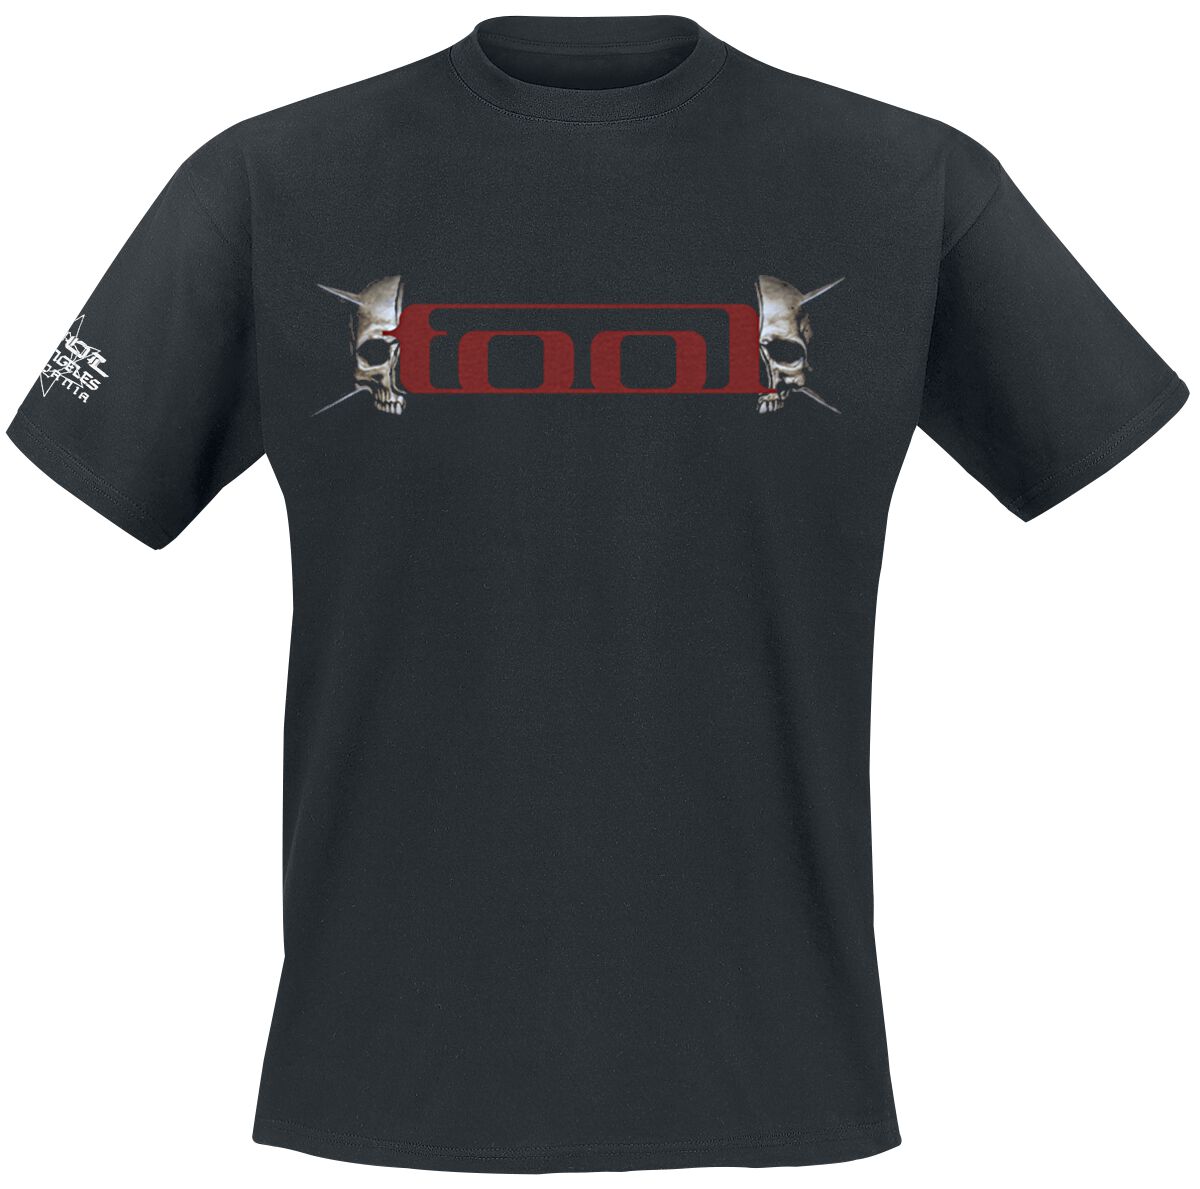 Tool T-Shirt - Skull Spikes - S bis XXL - für Männer - Größe XXL - schwarz  - Lizenziertes Merchandise!